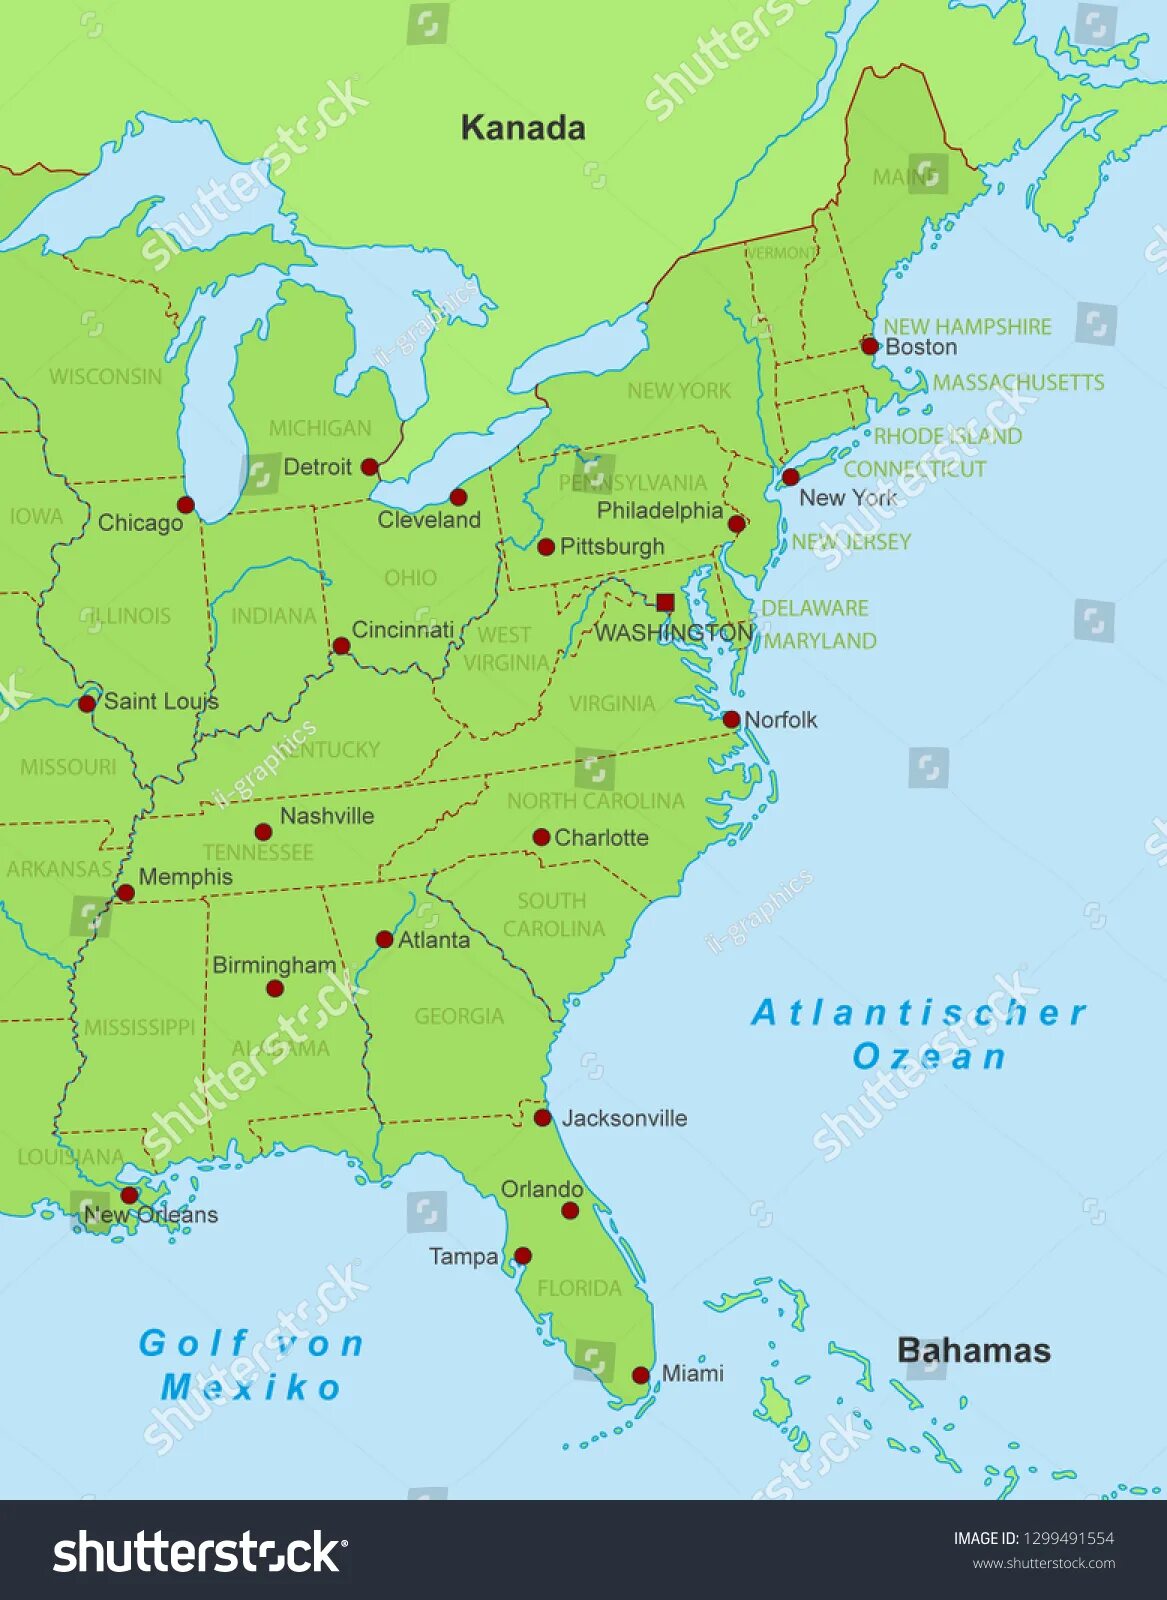 Карта восточной америки. Восточное побережье Америки на карте. Восточное побережье США на карте. Восточного побережья Соединенных Штатов Америки на карте. Карта Штатов восточного побережья США.